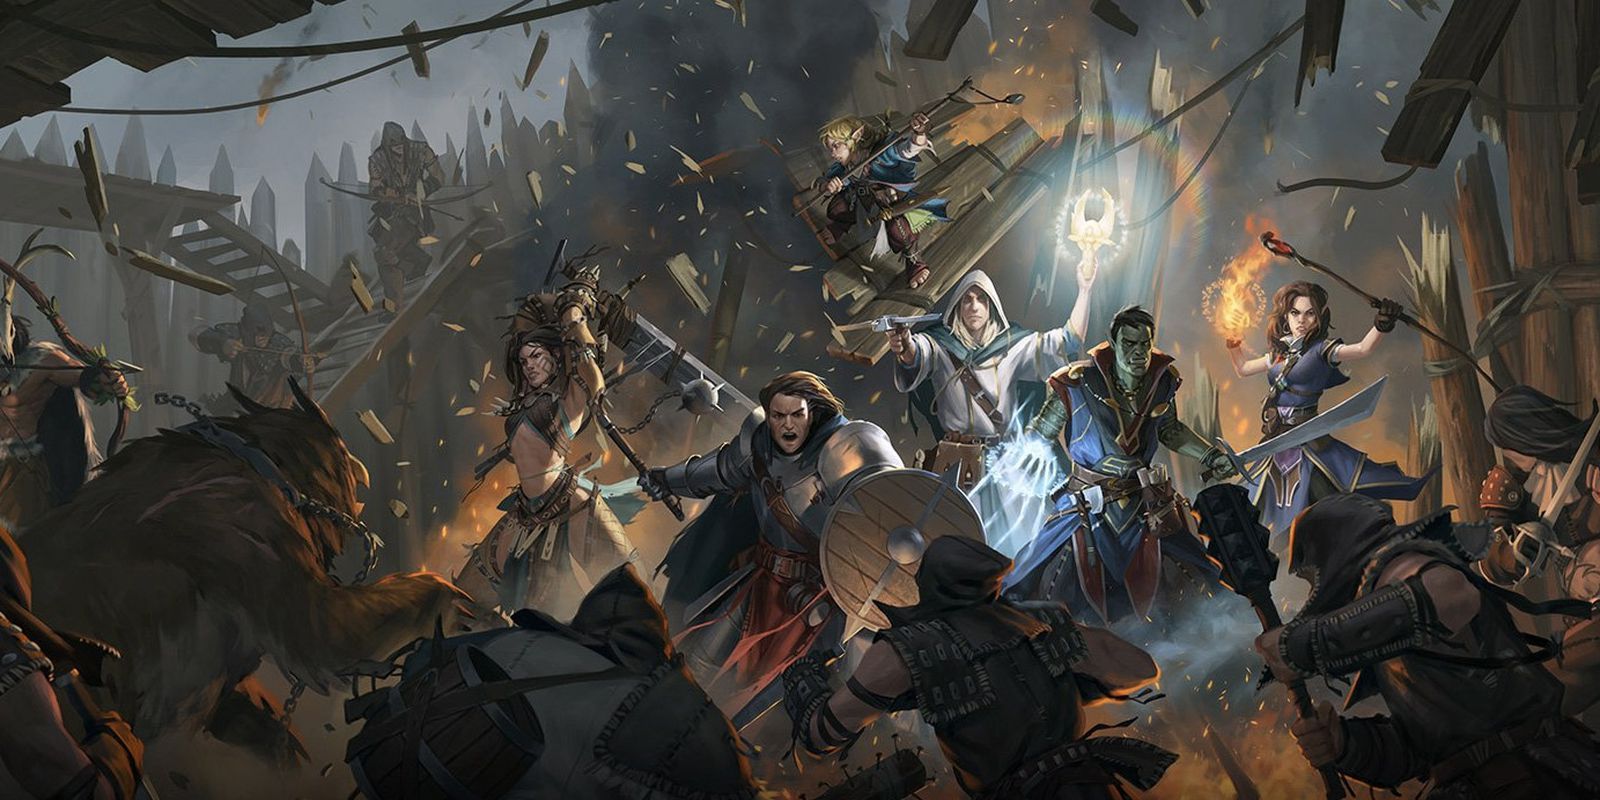 Arte promocional de Pathfinder, con un grupo de personajes atacados por una multitud enojada.